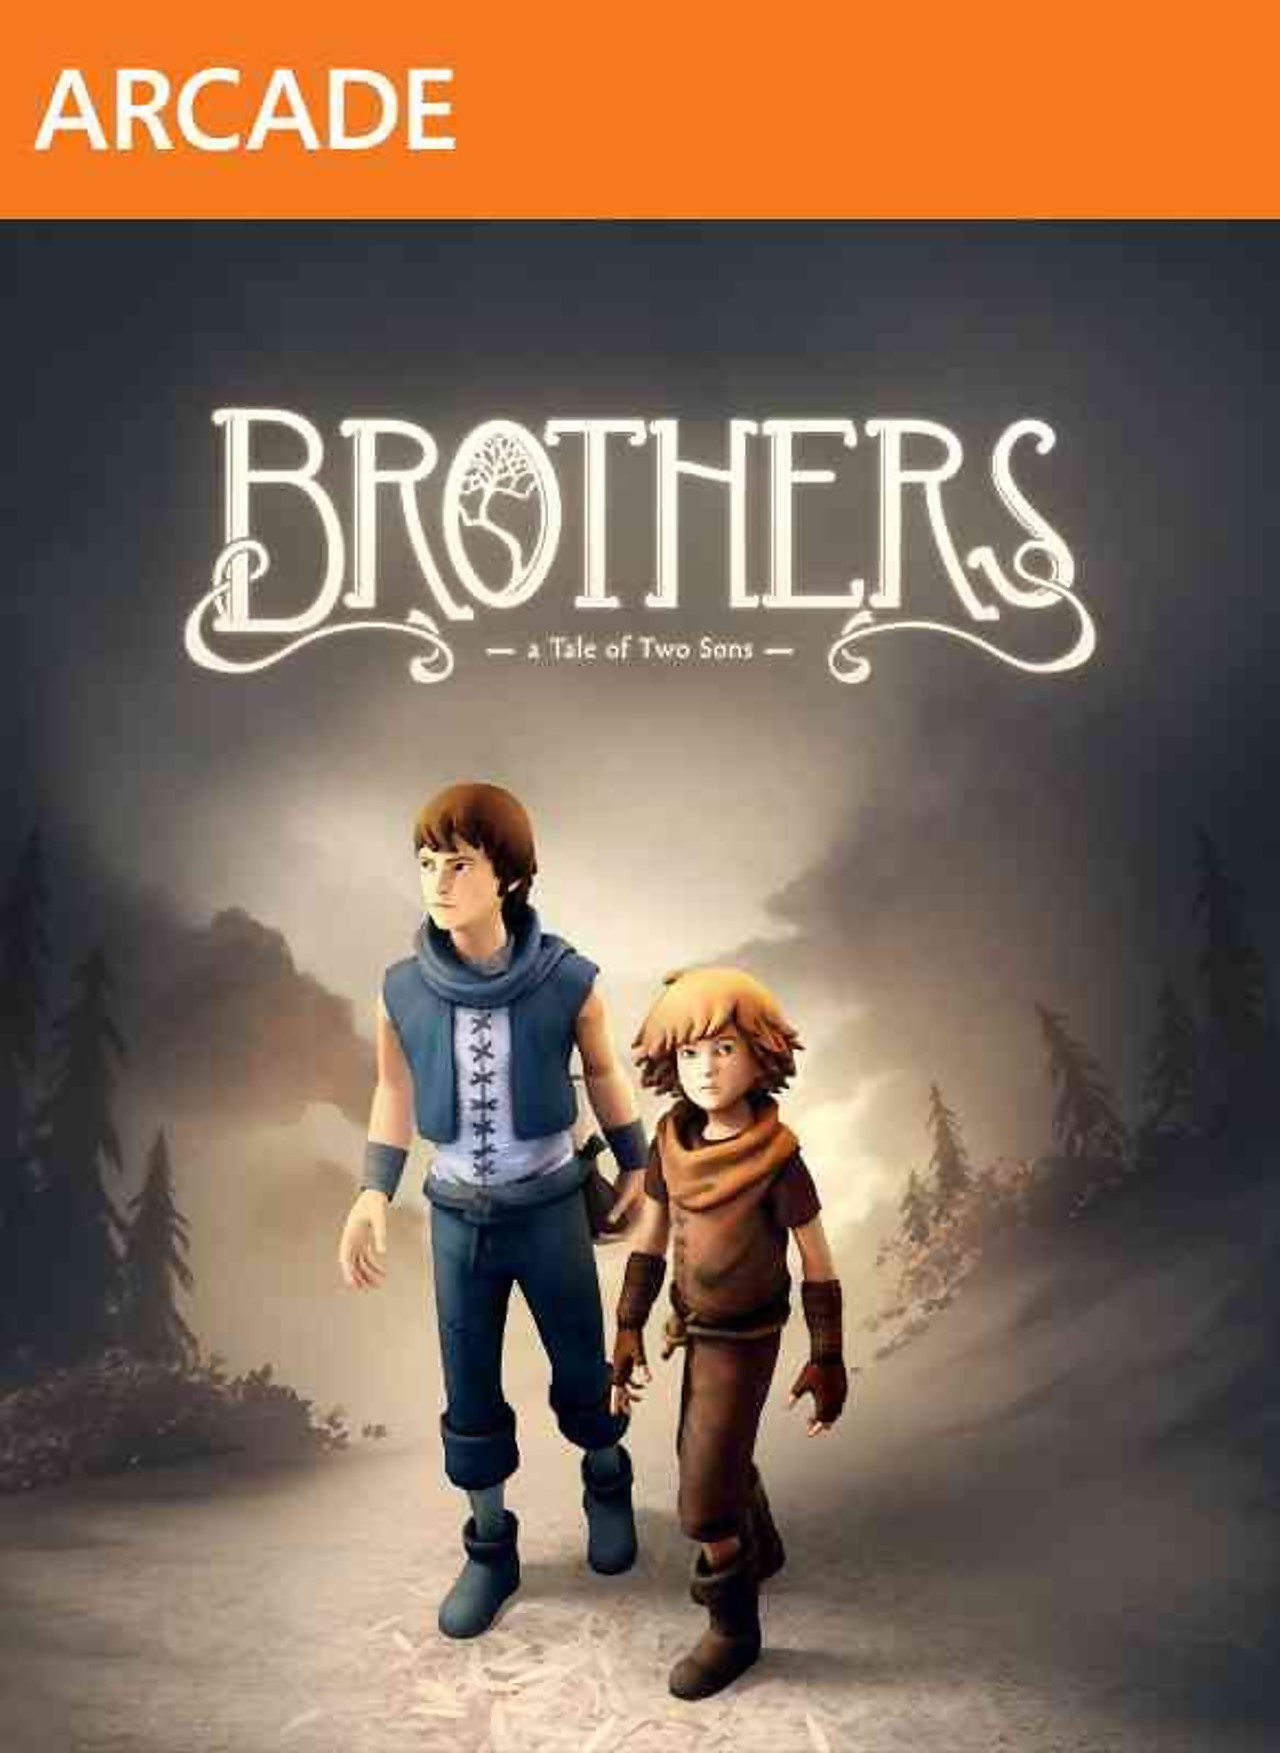 jaquette du jeu vidéo Brothers: A Tale of Two Sons